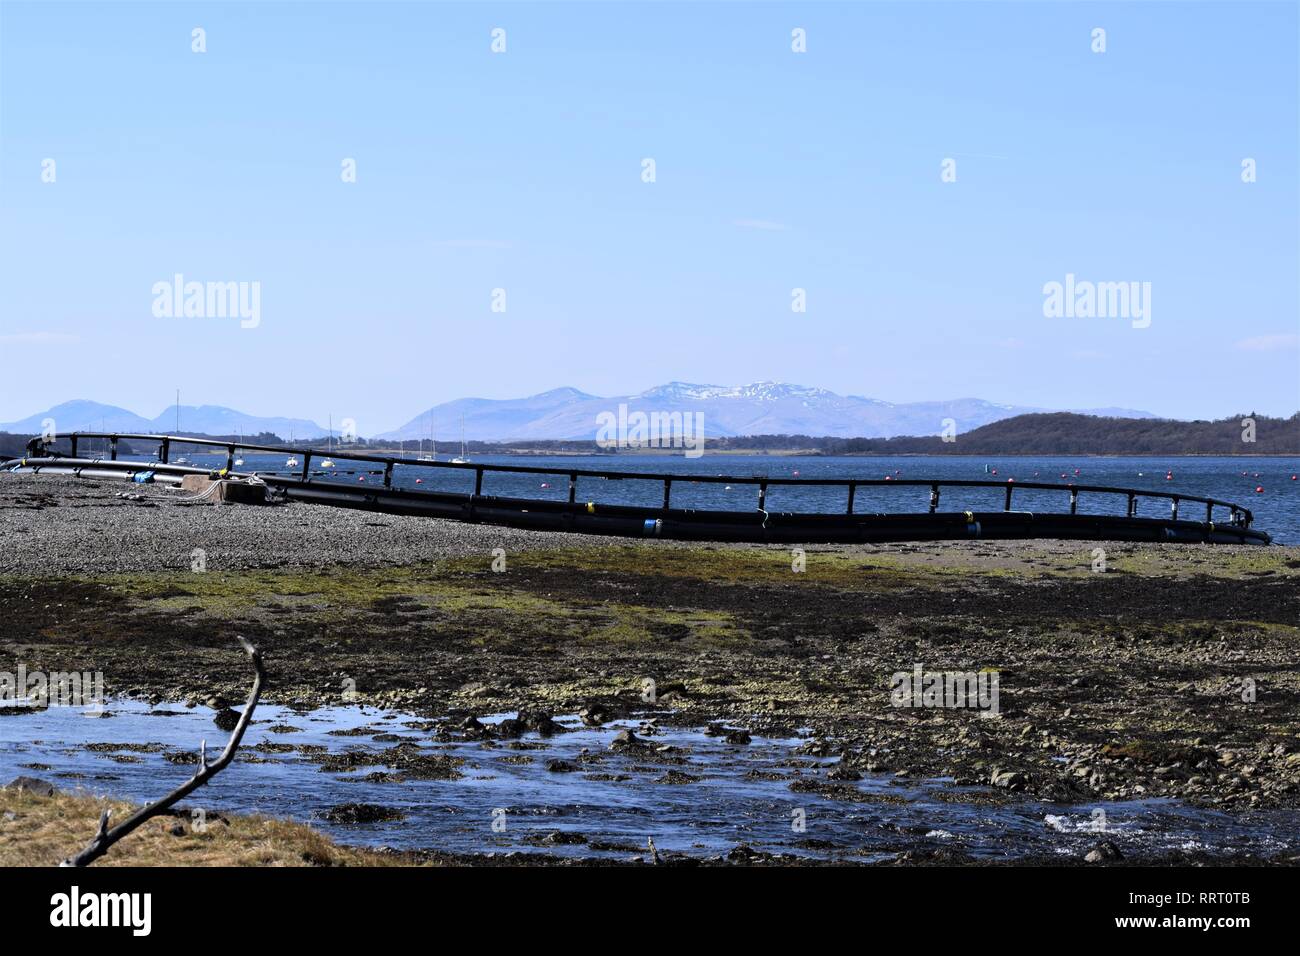 Schwimmende fische Käfig von HDPE-Rohre für die Lachszucht, im Bau am Ufer des Loch Creran, Argyll. Herrlichen blauen Himmel und die fernen Hügel. Stockfoto